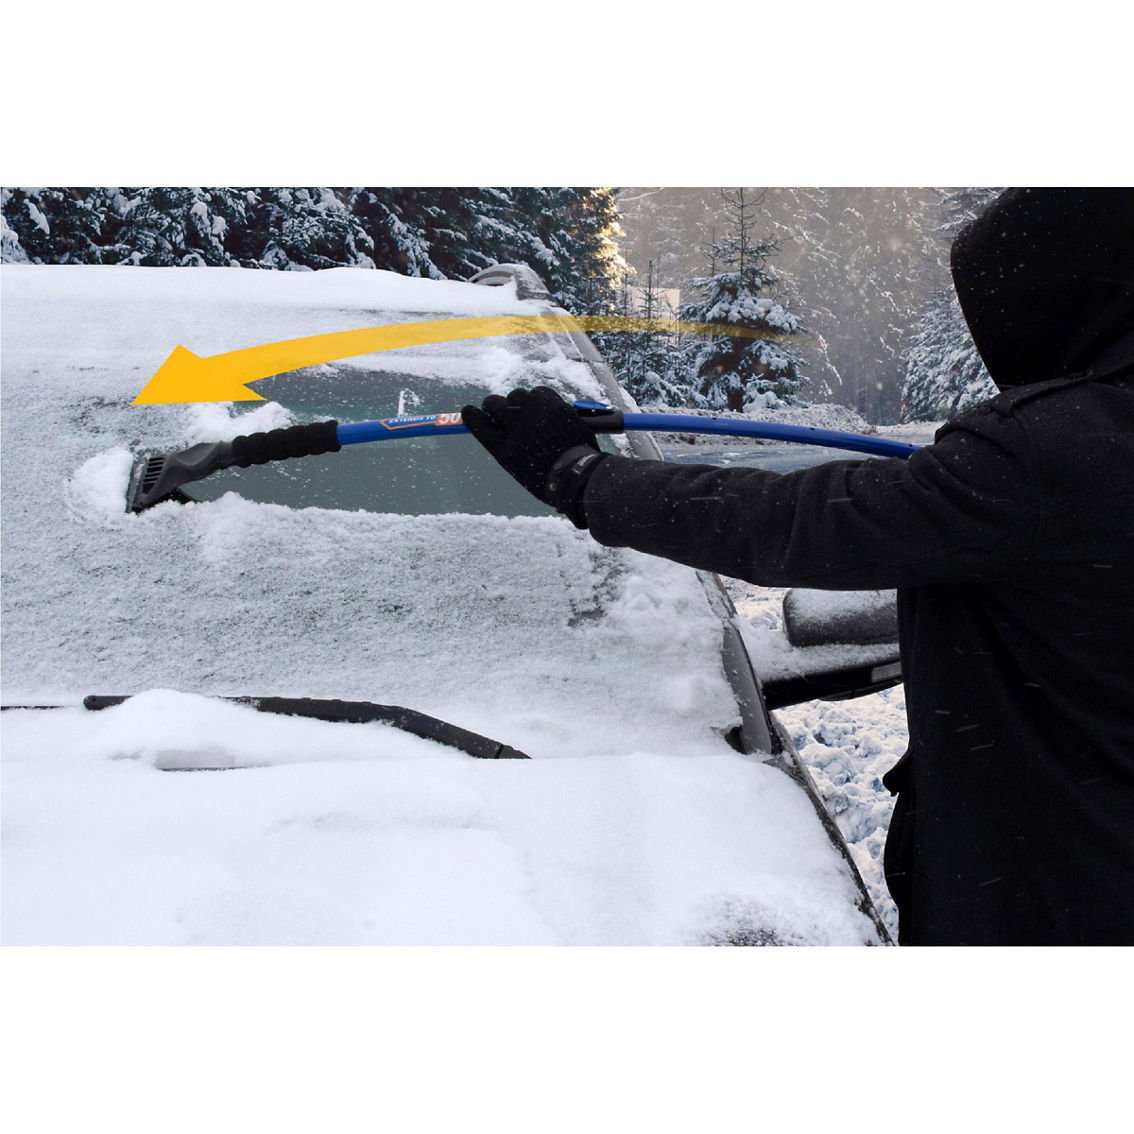 Hopkins SubZero 50 in. Super Duty Snow Broom - Image 8 of 9